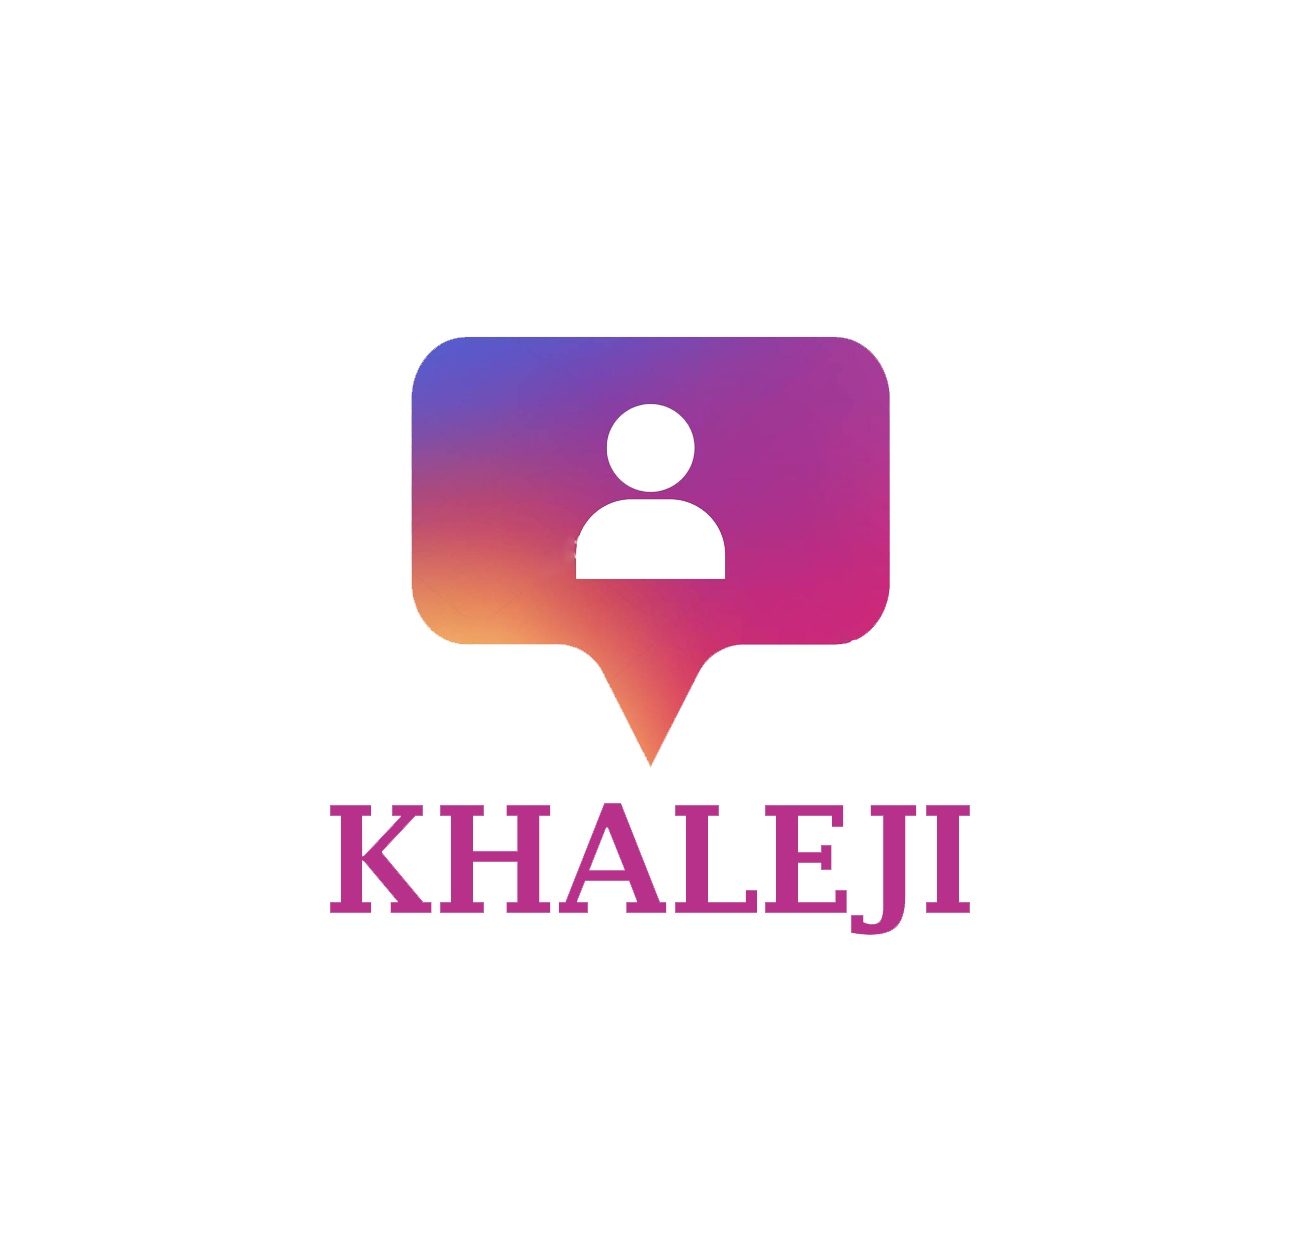 Khaleji Instagram Followers